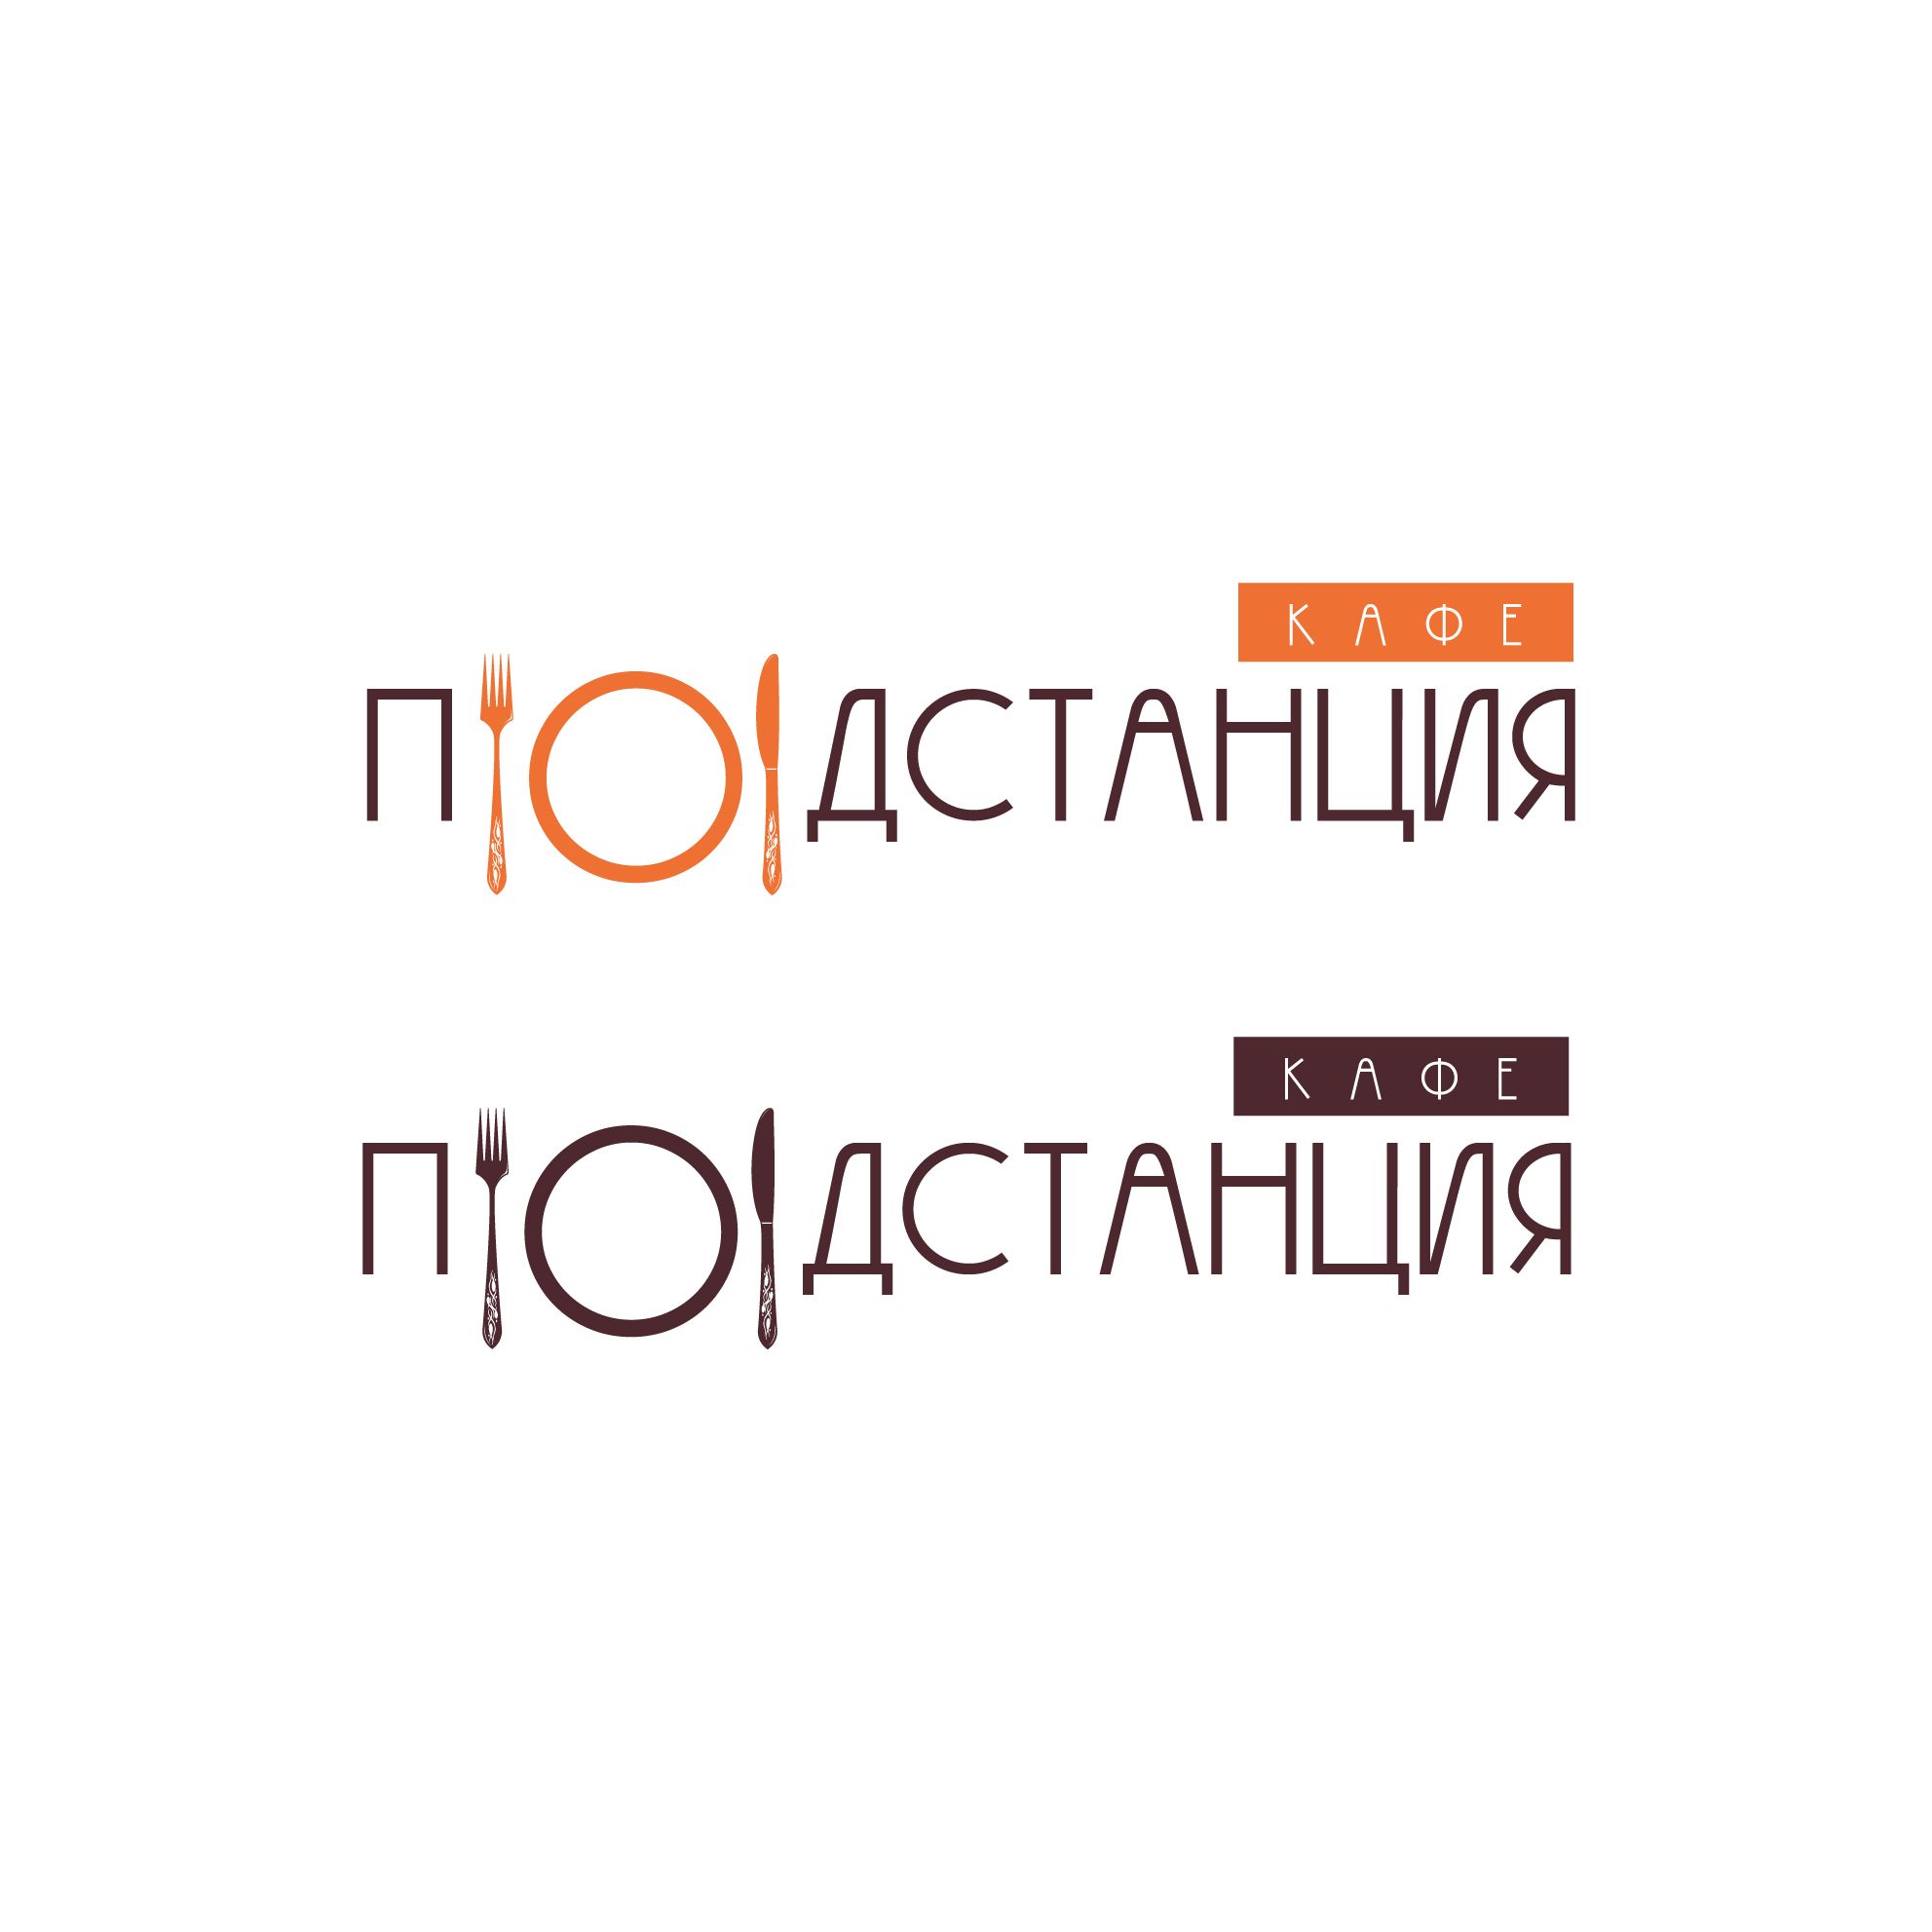 Логотип для Логотип для Кафе «Подстанция» - дизайнер Dizkonov_Marat